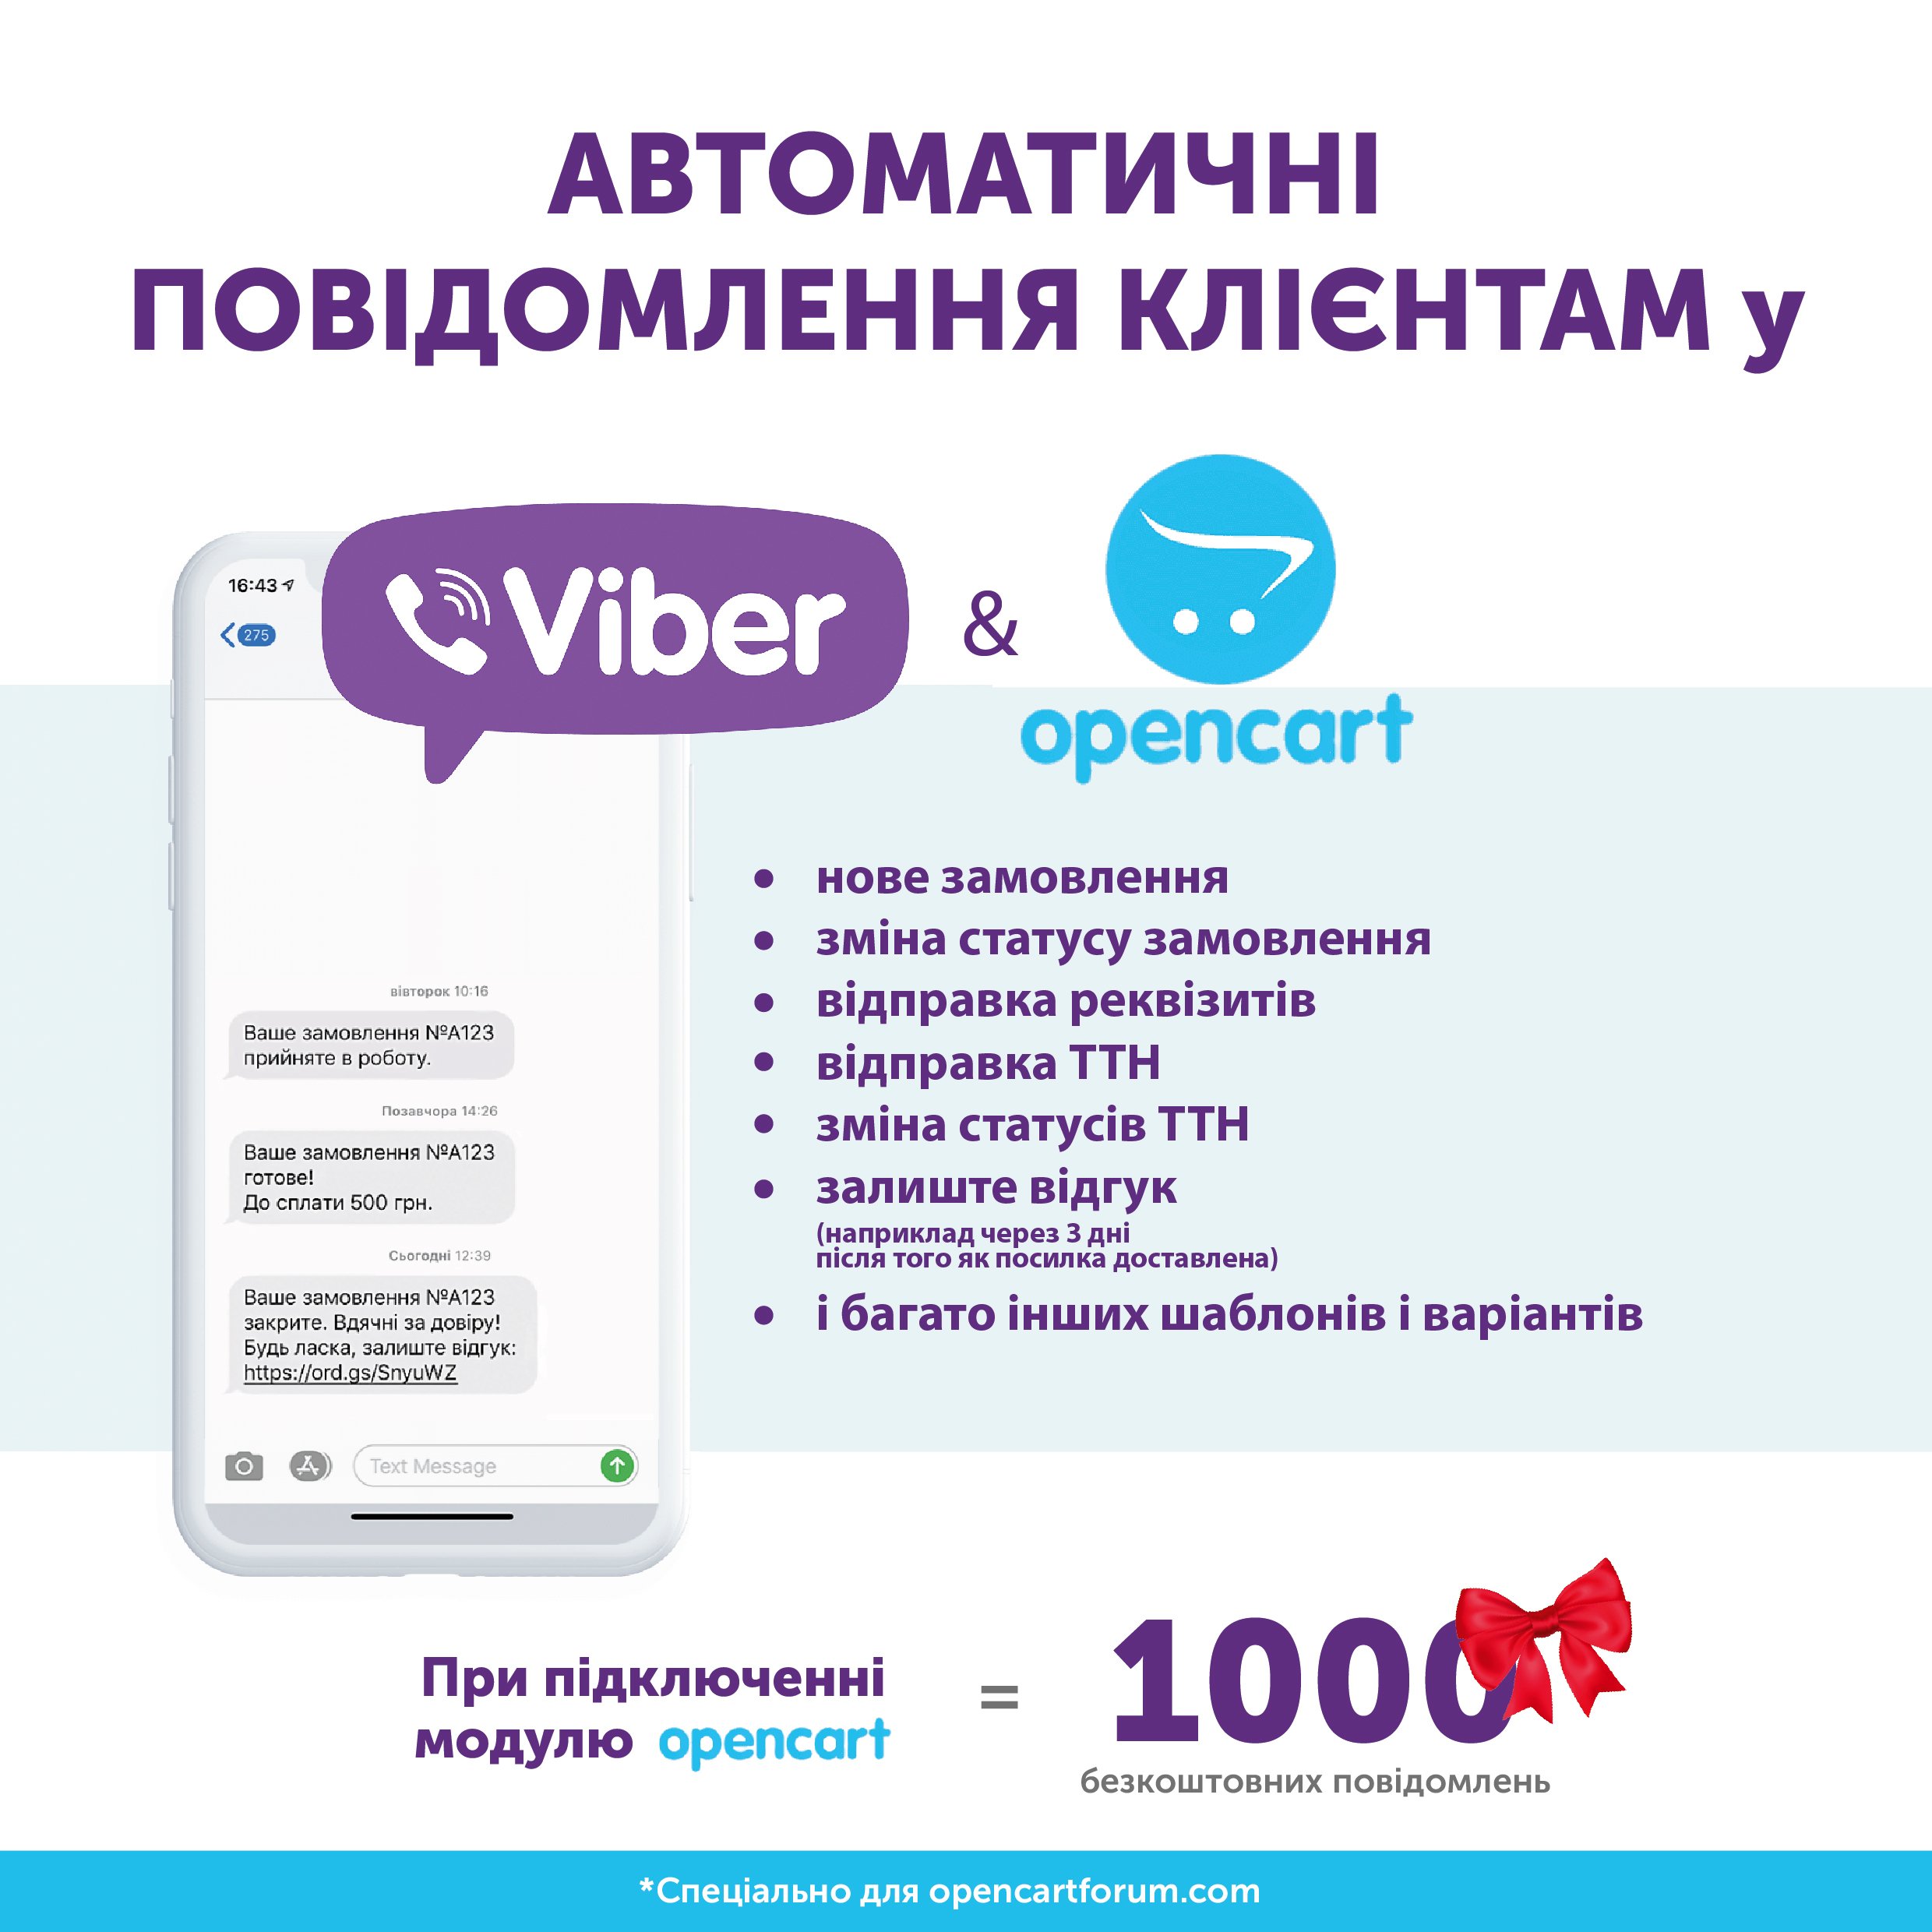 Viber уведомления о заказе и смене статуса для покупателей от Cilck-Uni 